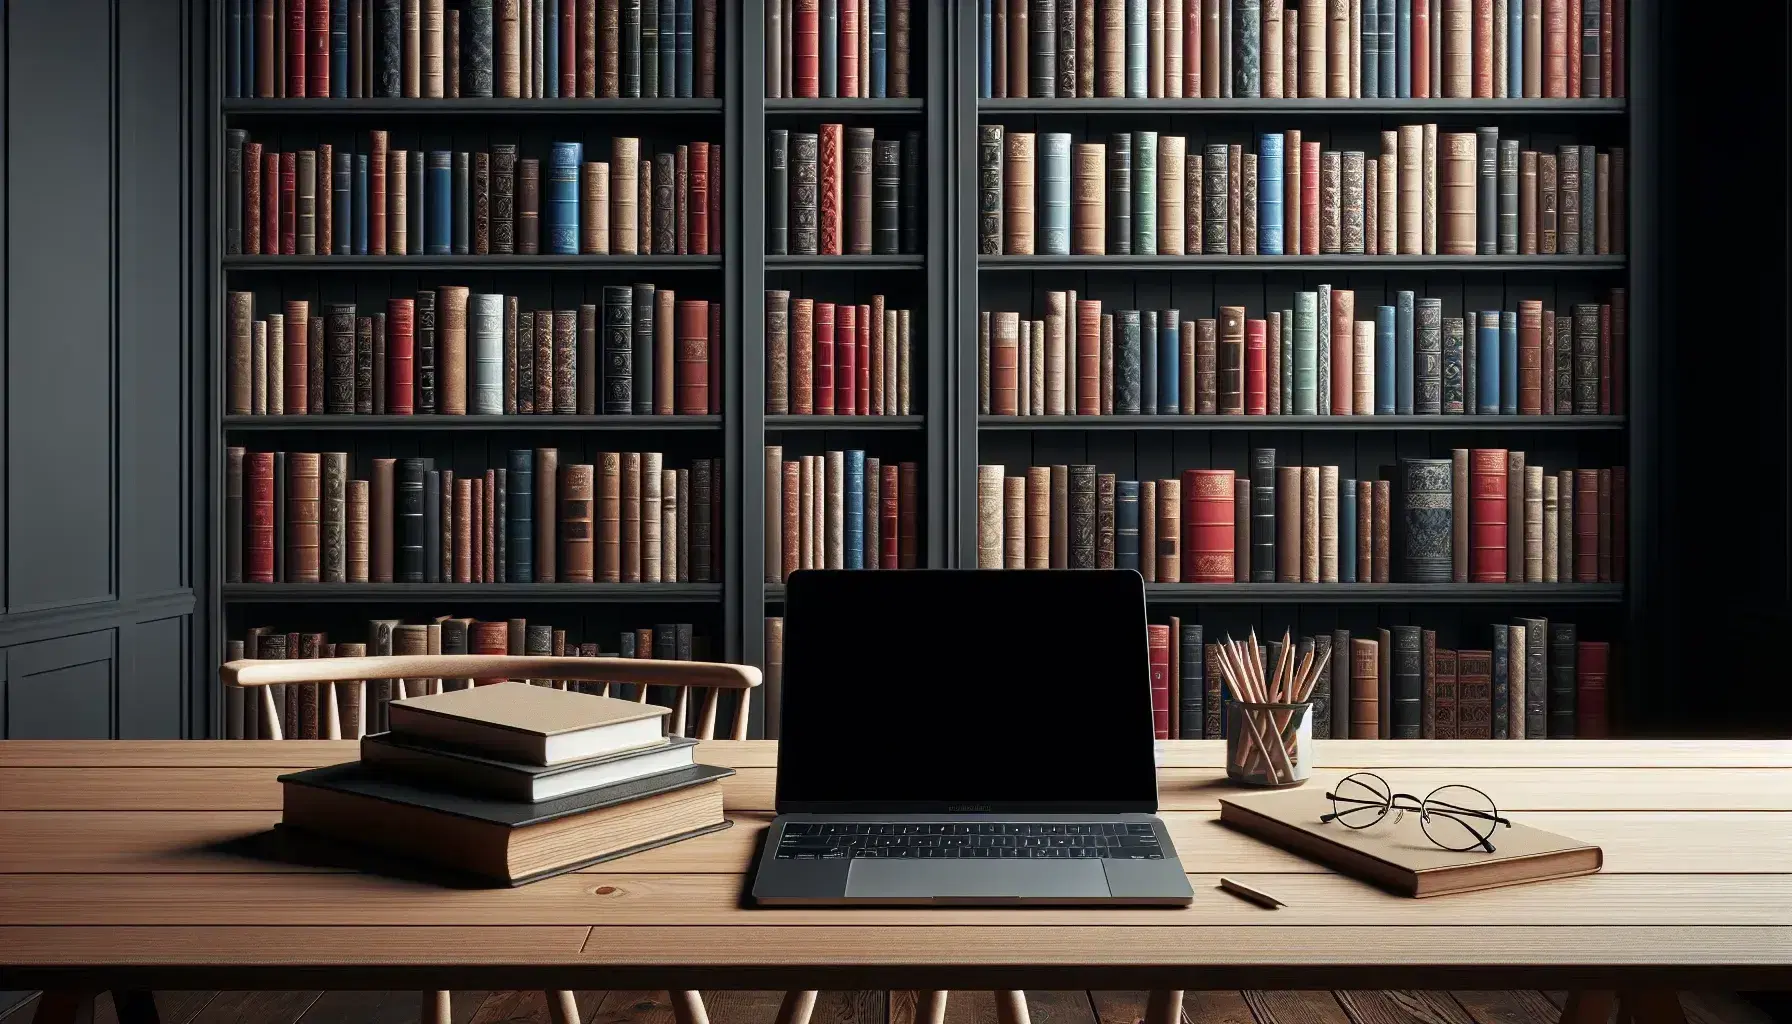 Biblioteca con estantes de madera oscura llenos de libros, mesa con laptop abierta, gafas y cuaderno, ambiente cálido y acogedor.